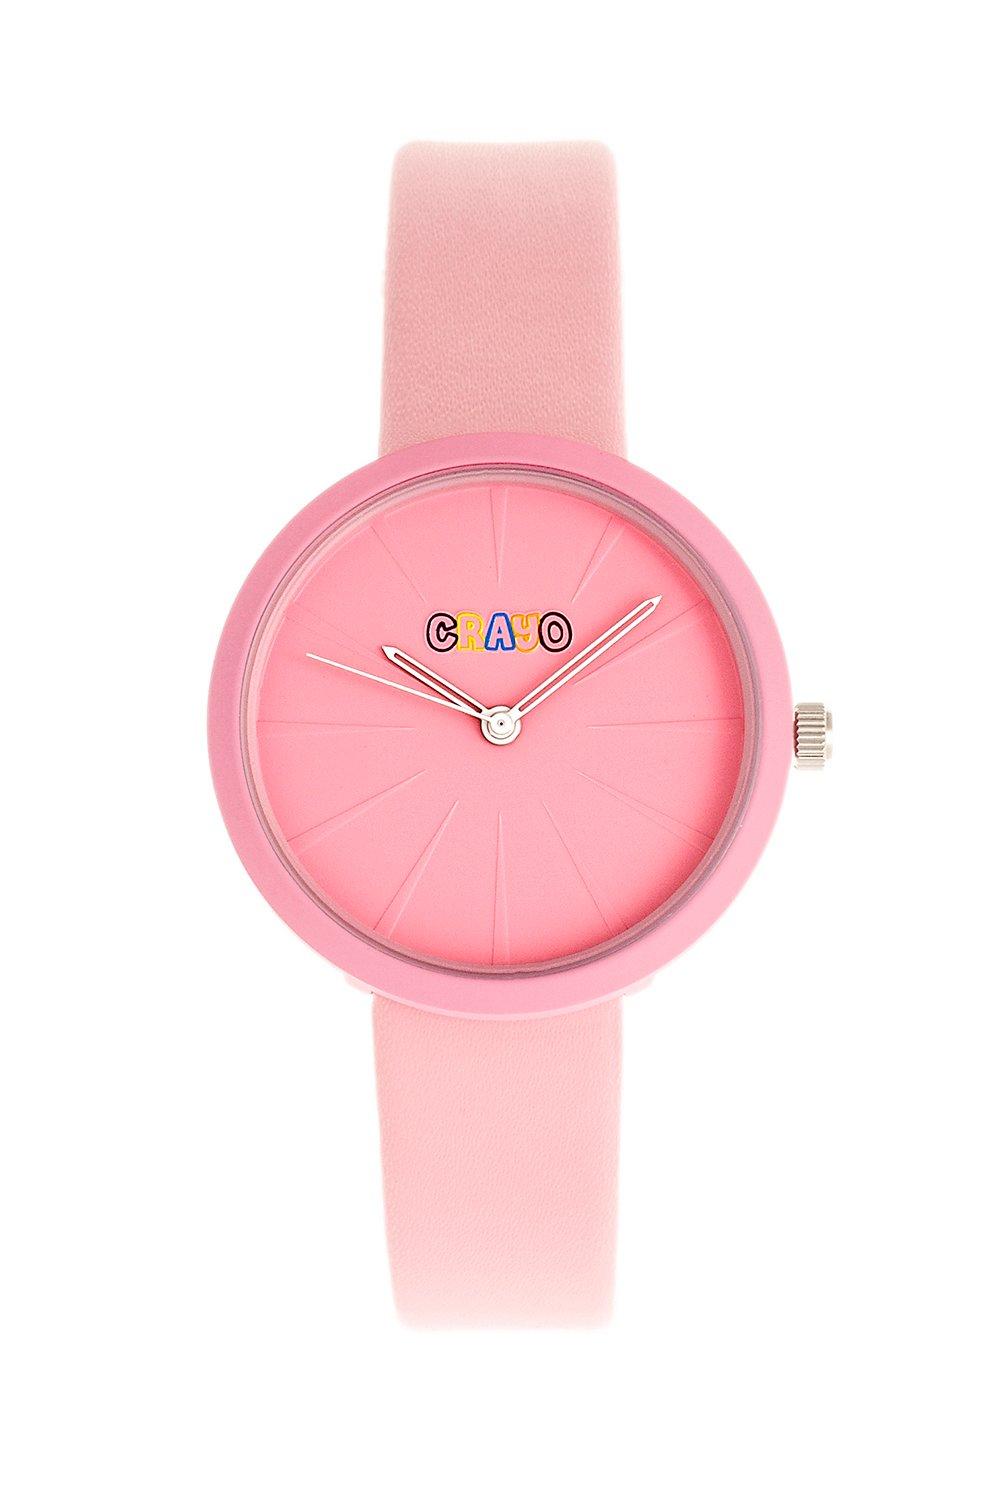 Часы унисекс с лезвием Crayo, розовый